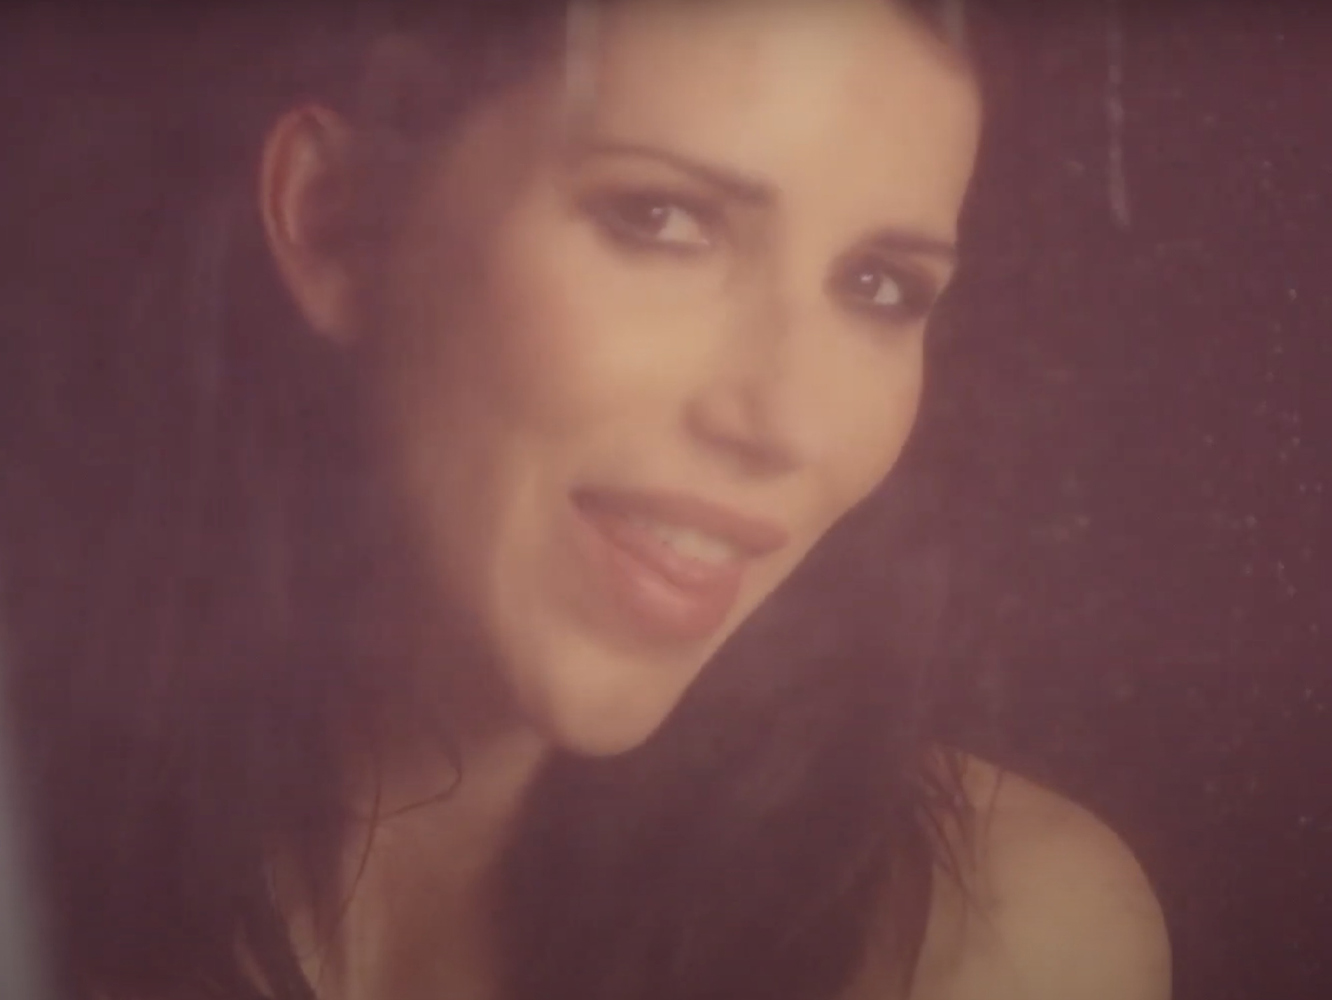  Nika, ‘A Medias’ entre Paloma San Basilio y Sara Montiel en su nuevo single